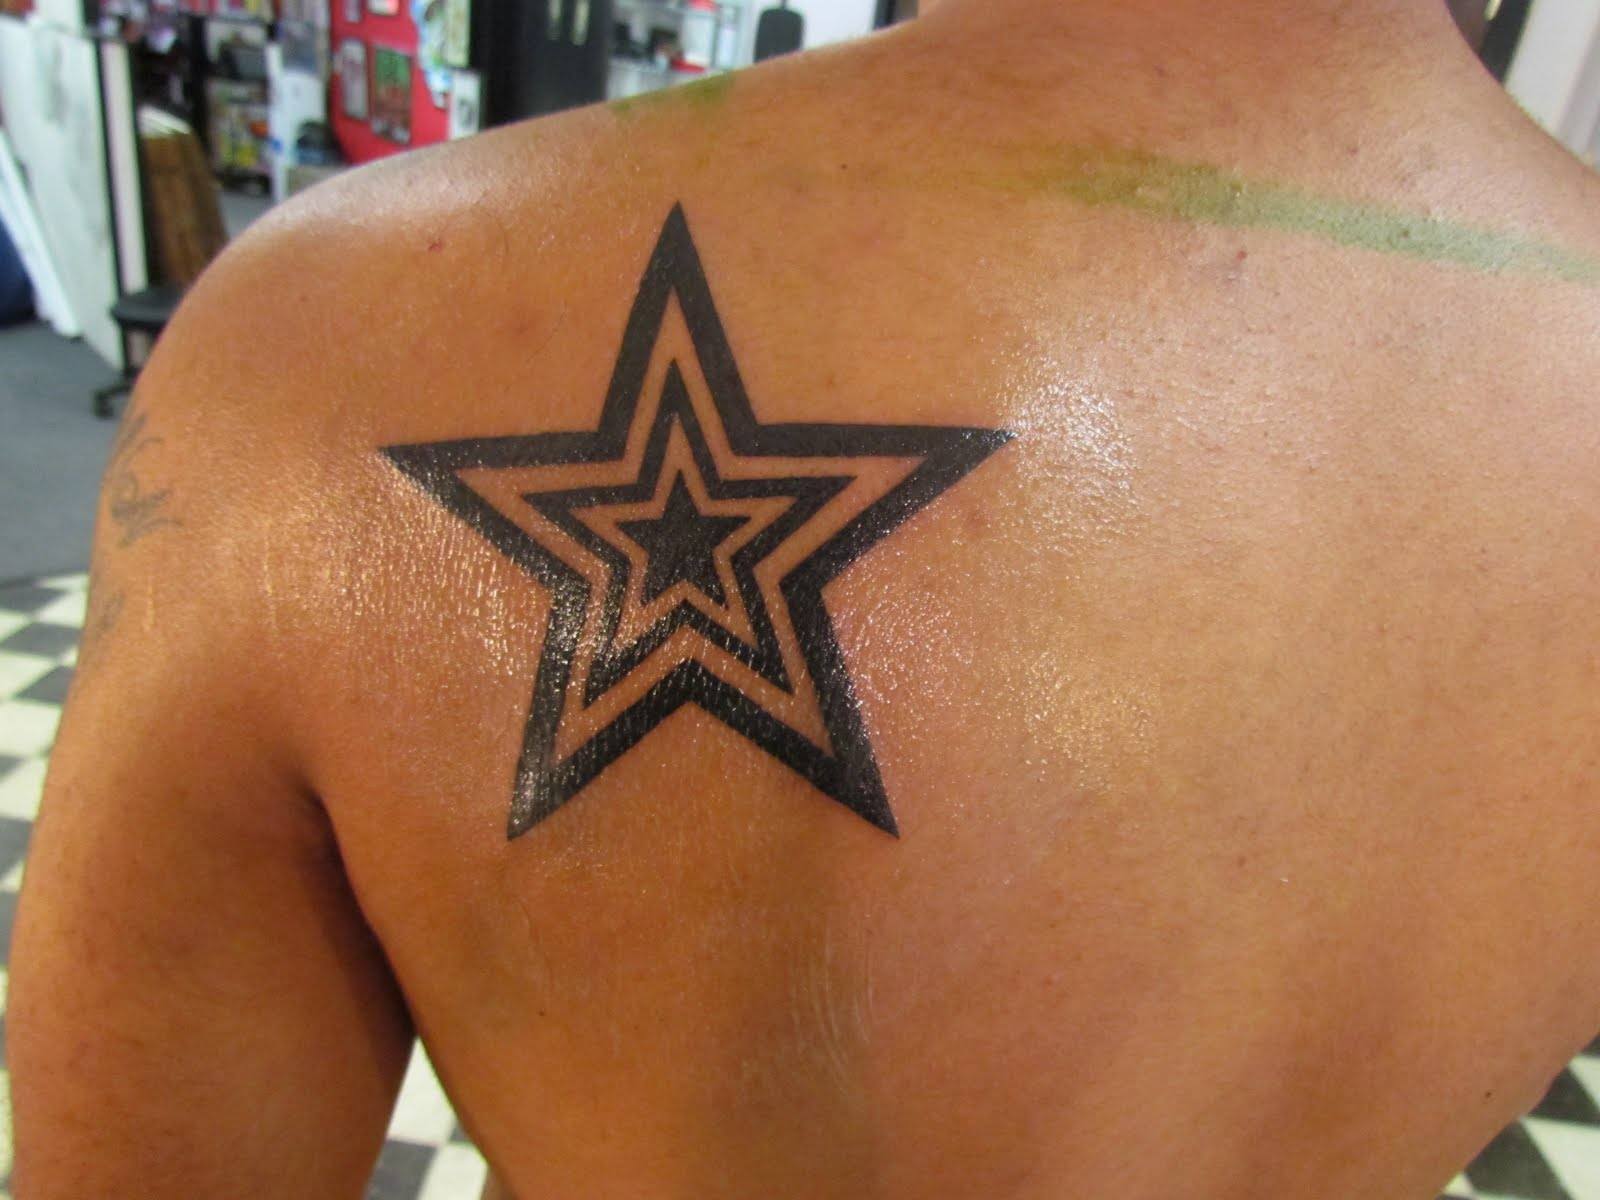 star-tattoo-shoulder-fame-celebrity-achievement-notoriety-luck-heavens